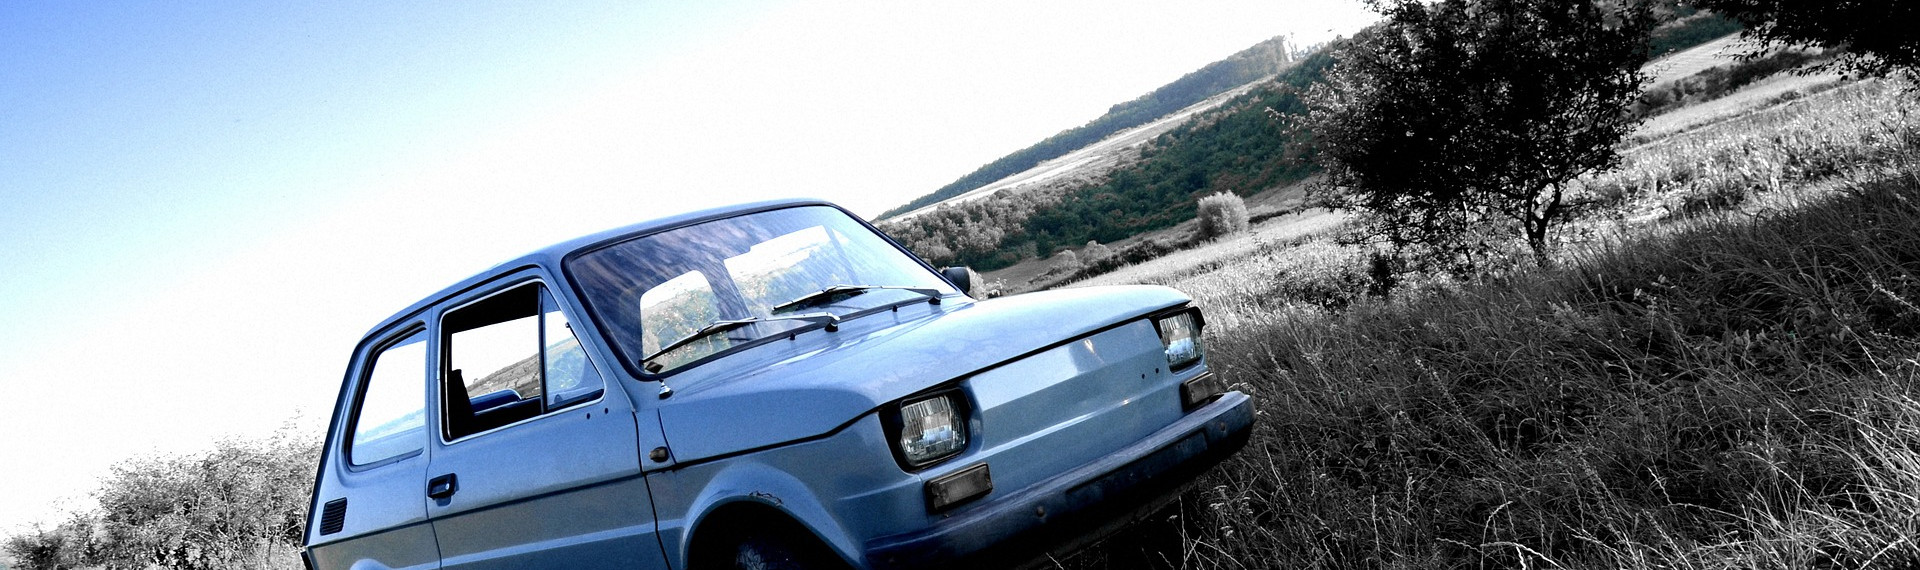 Tur med skranglete Fiat 126 | Pissup Utdrikningslag